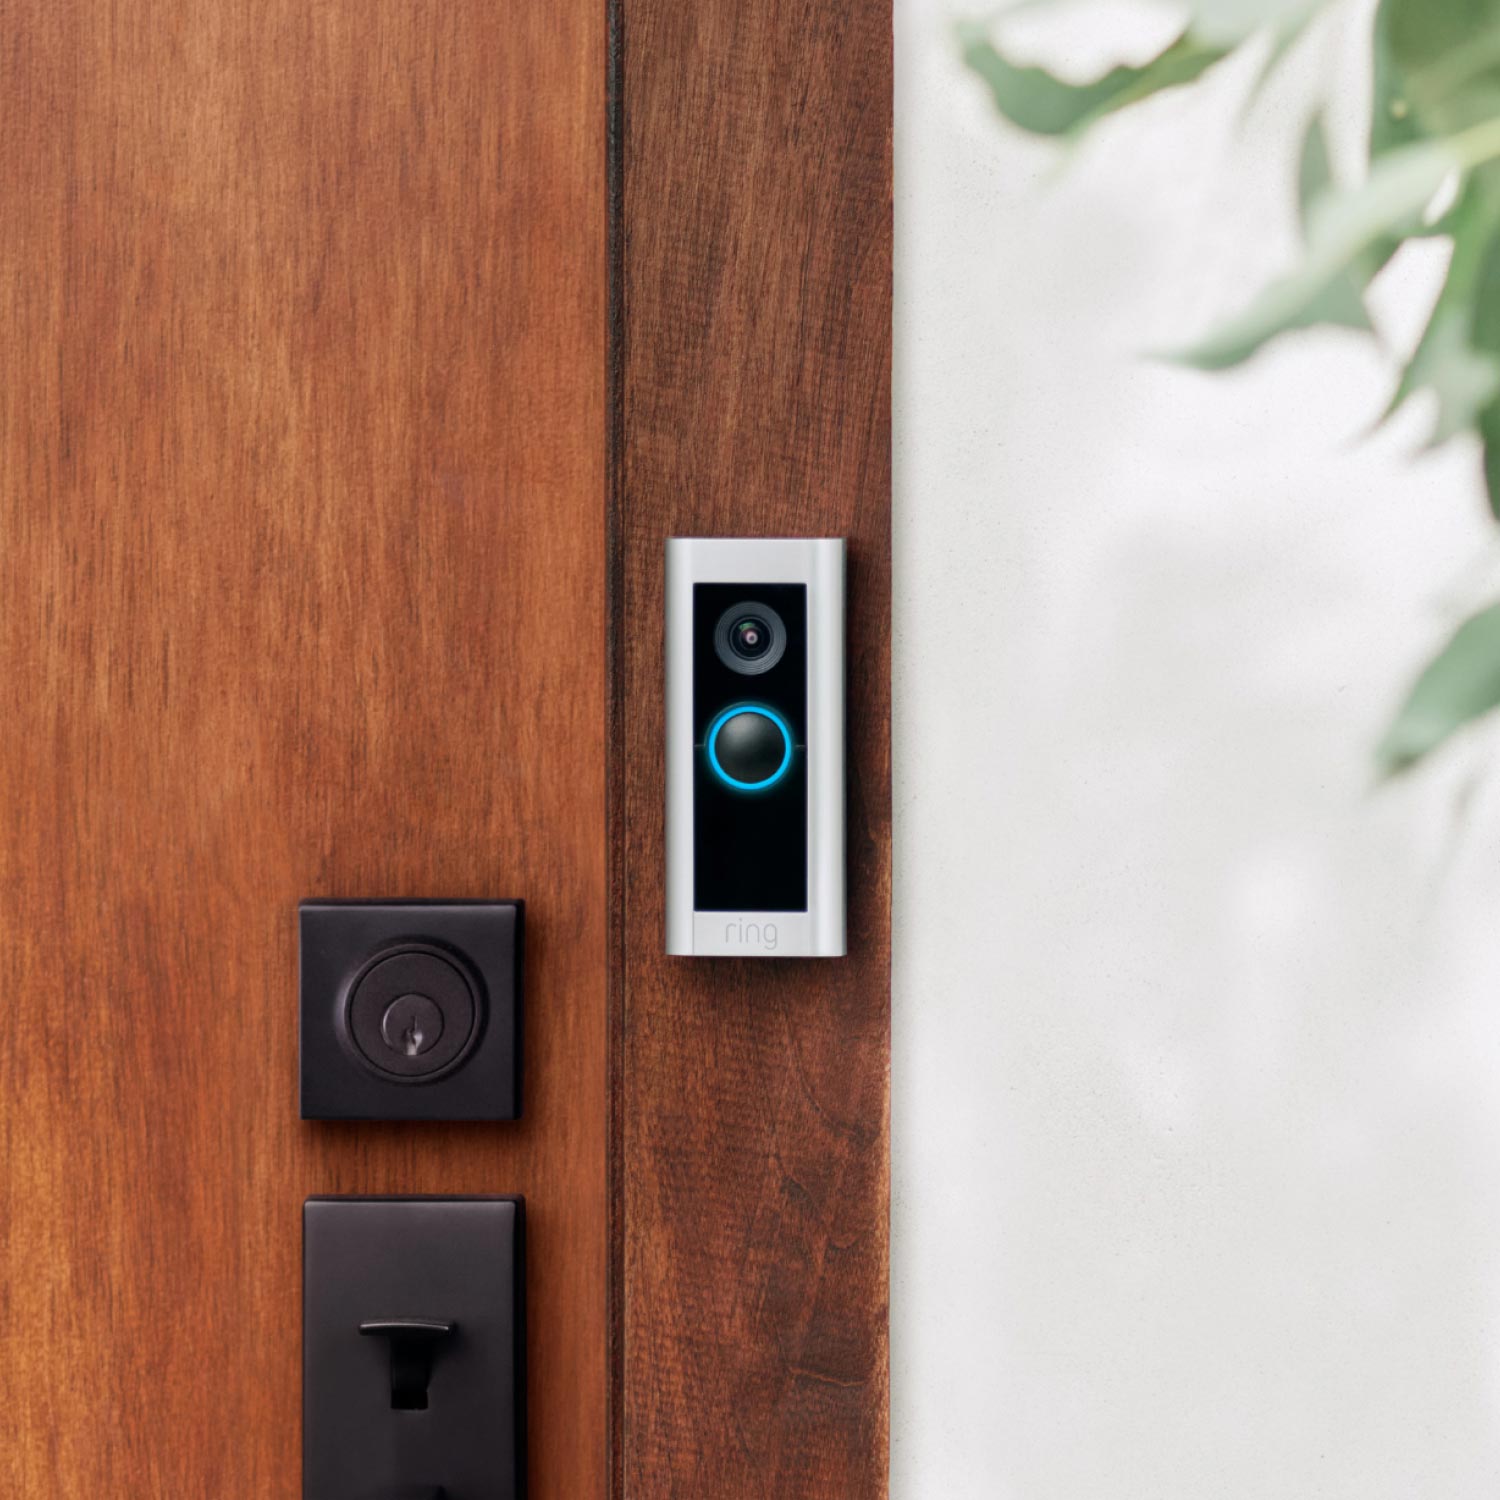 Wired Doorbell Pro (Video Doorbell Pro 2) (Certified Refurbished) - Certified refurbished Wired Doorbell Pro in satin nickel finish mounted next to front door.